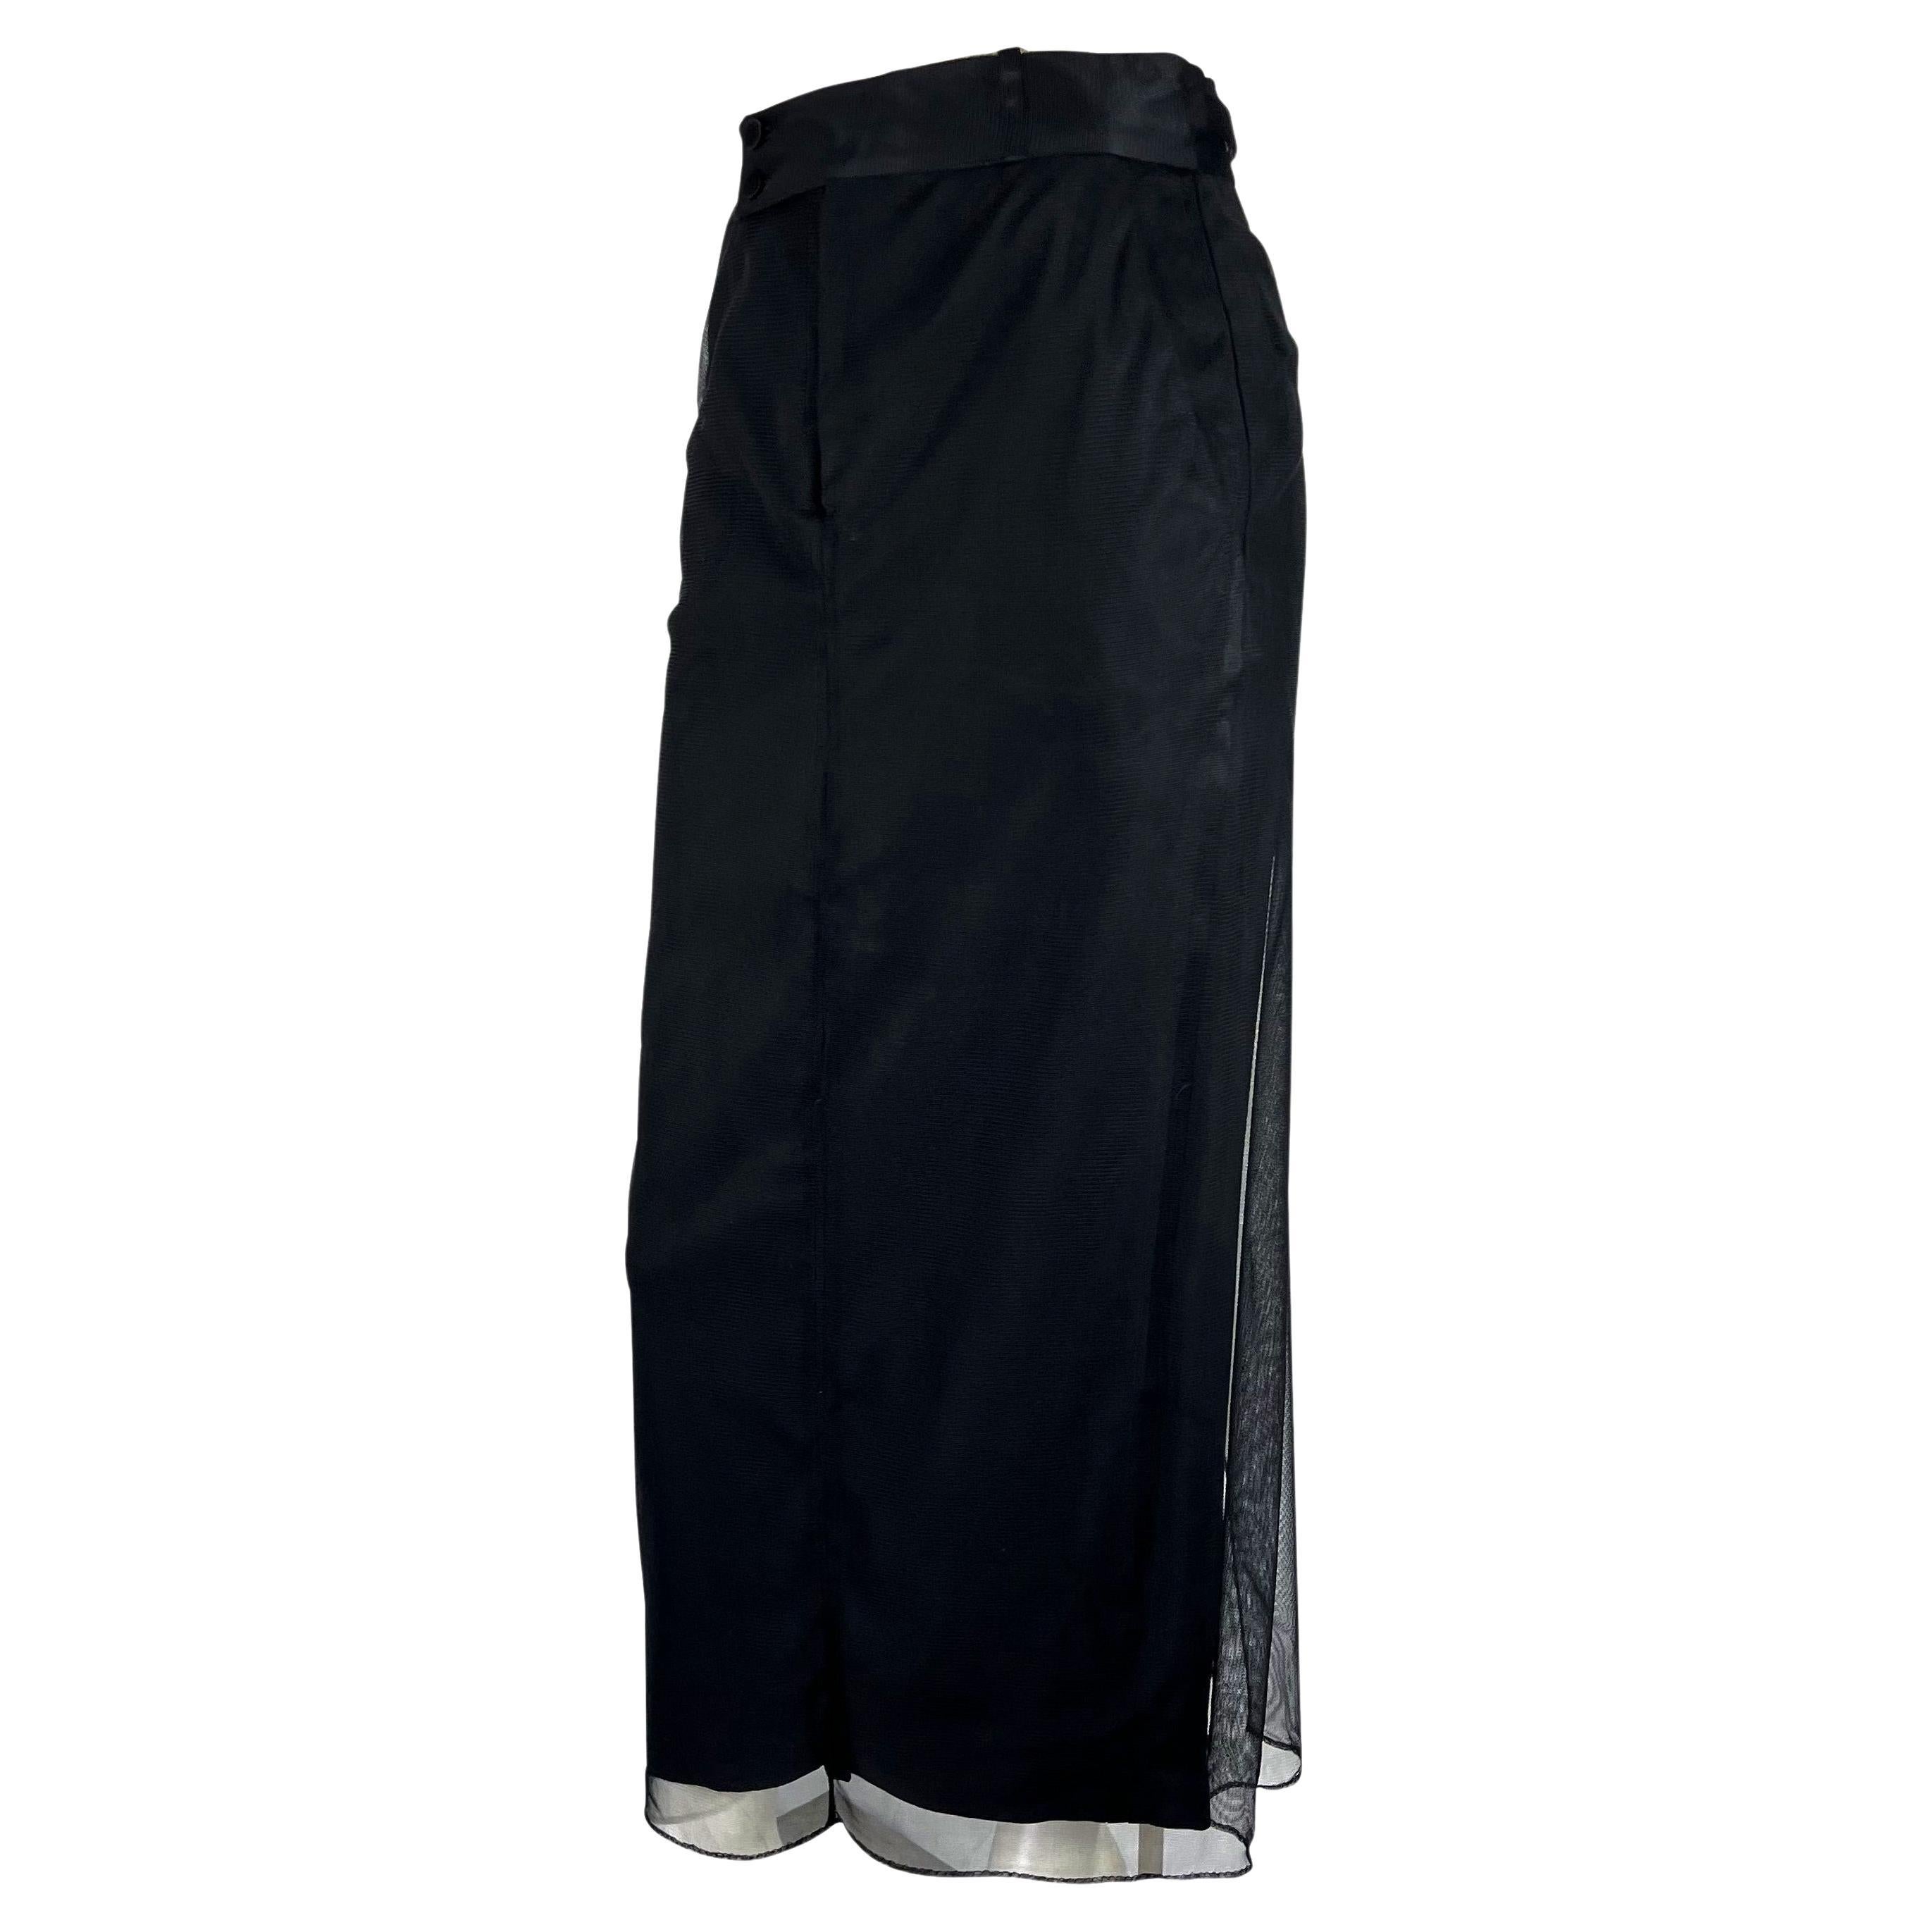 black tulle overlay skirt